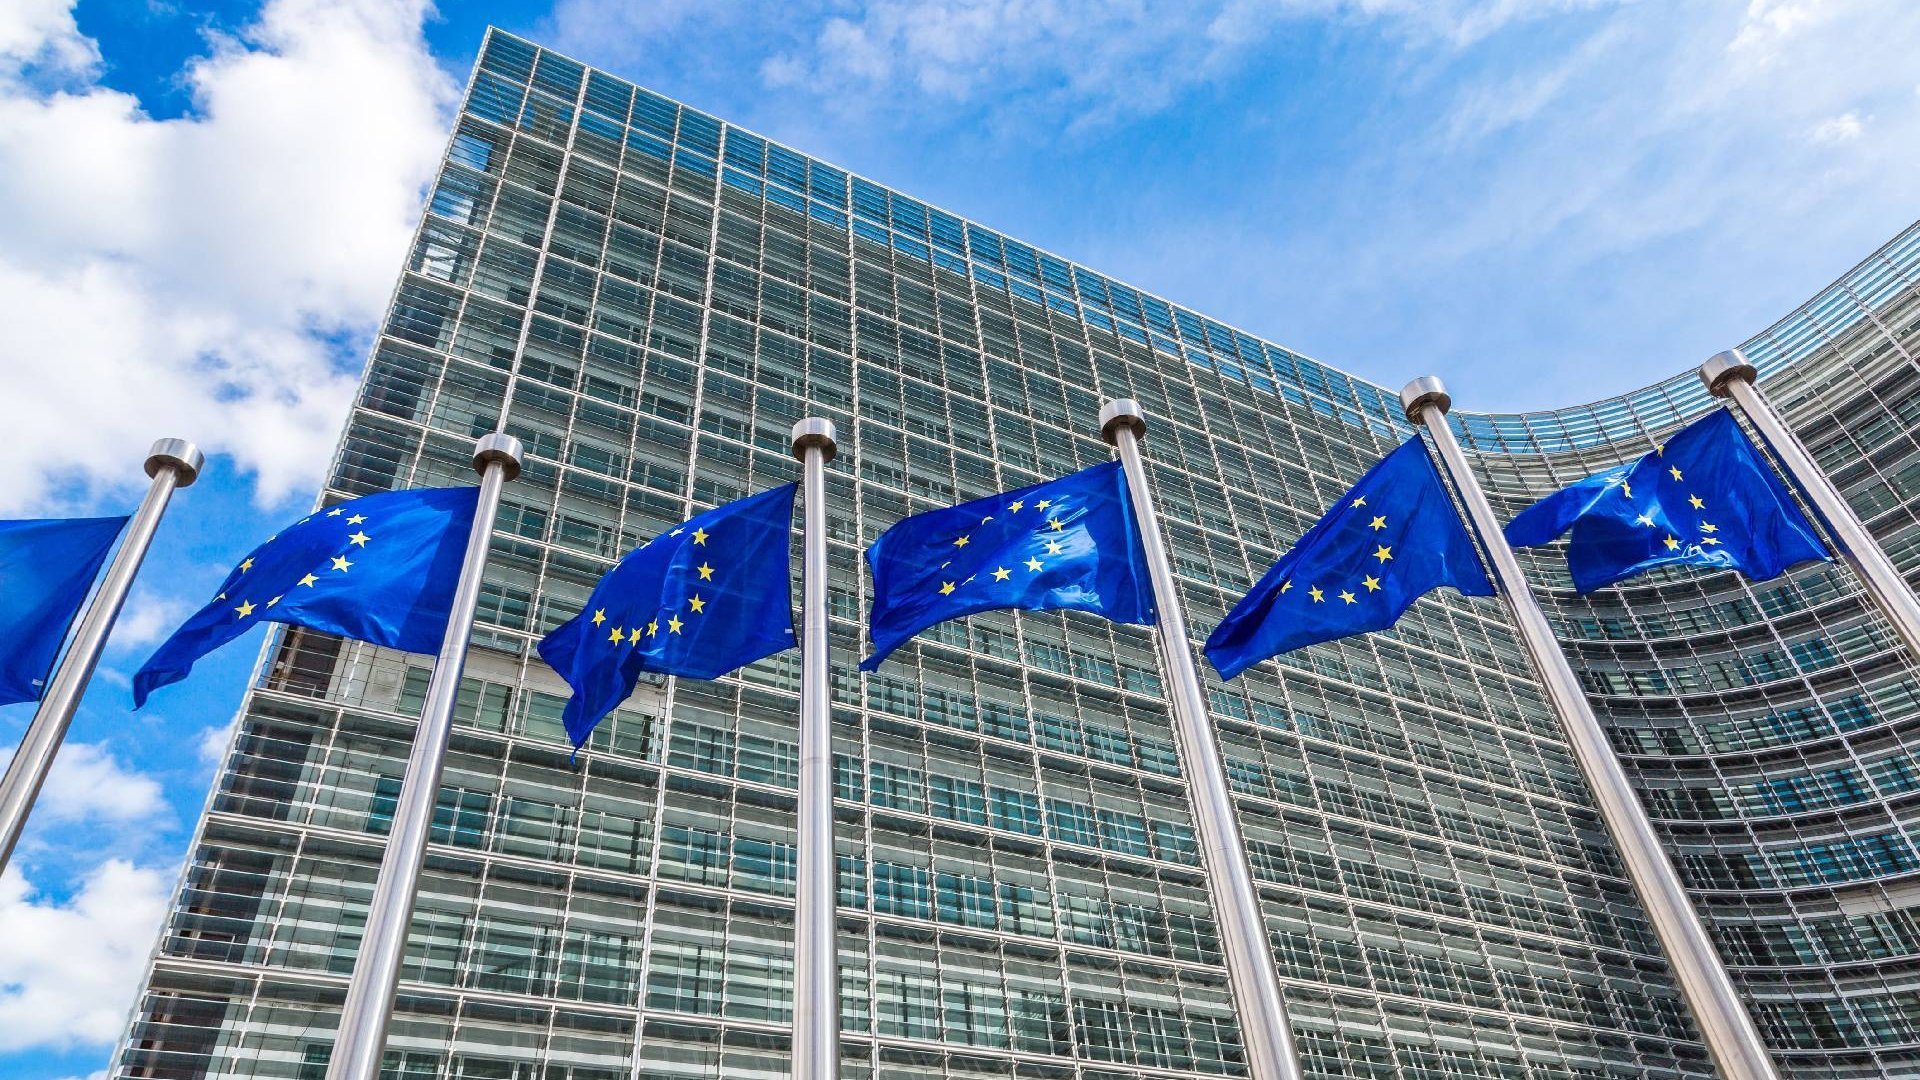 Das Parlamentsgebäude der Europäischen Union in Brüssel als Symbolbild für die Regulatorik in der EU.